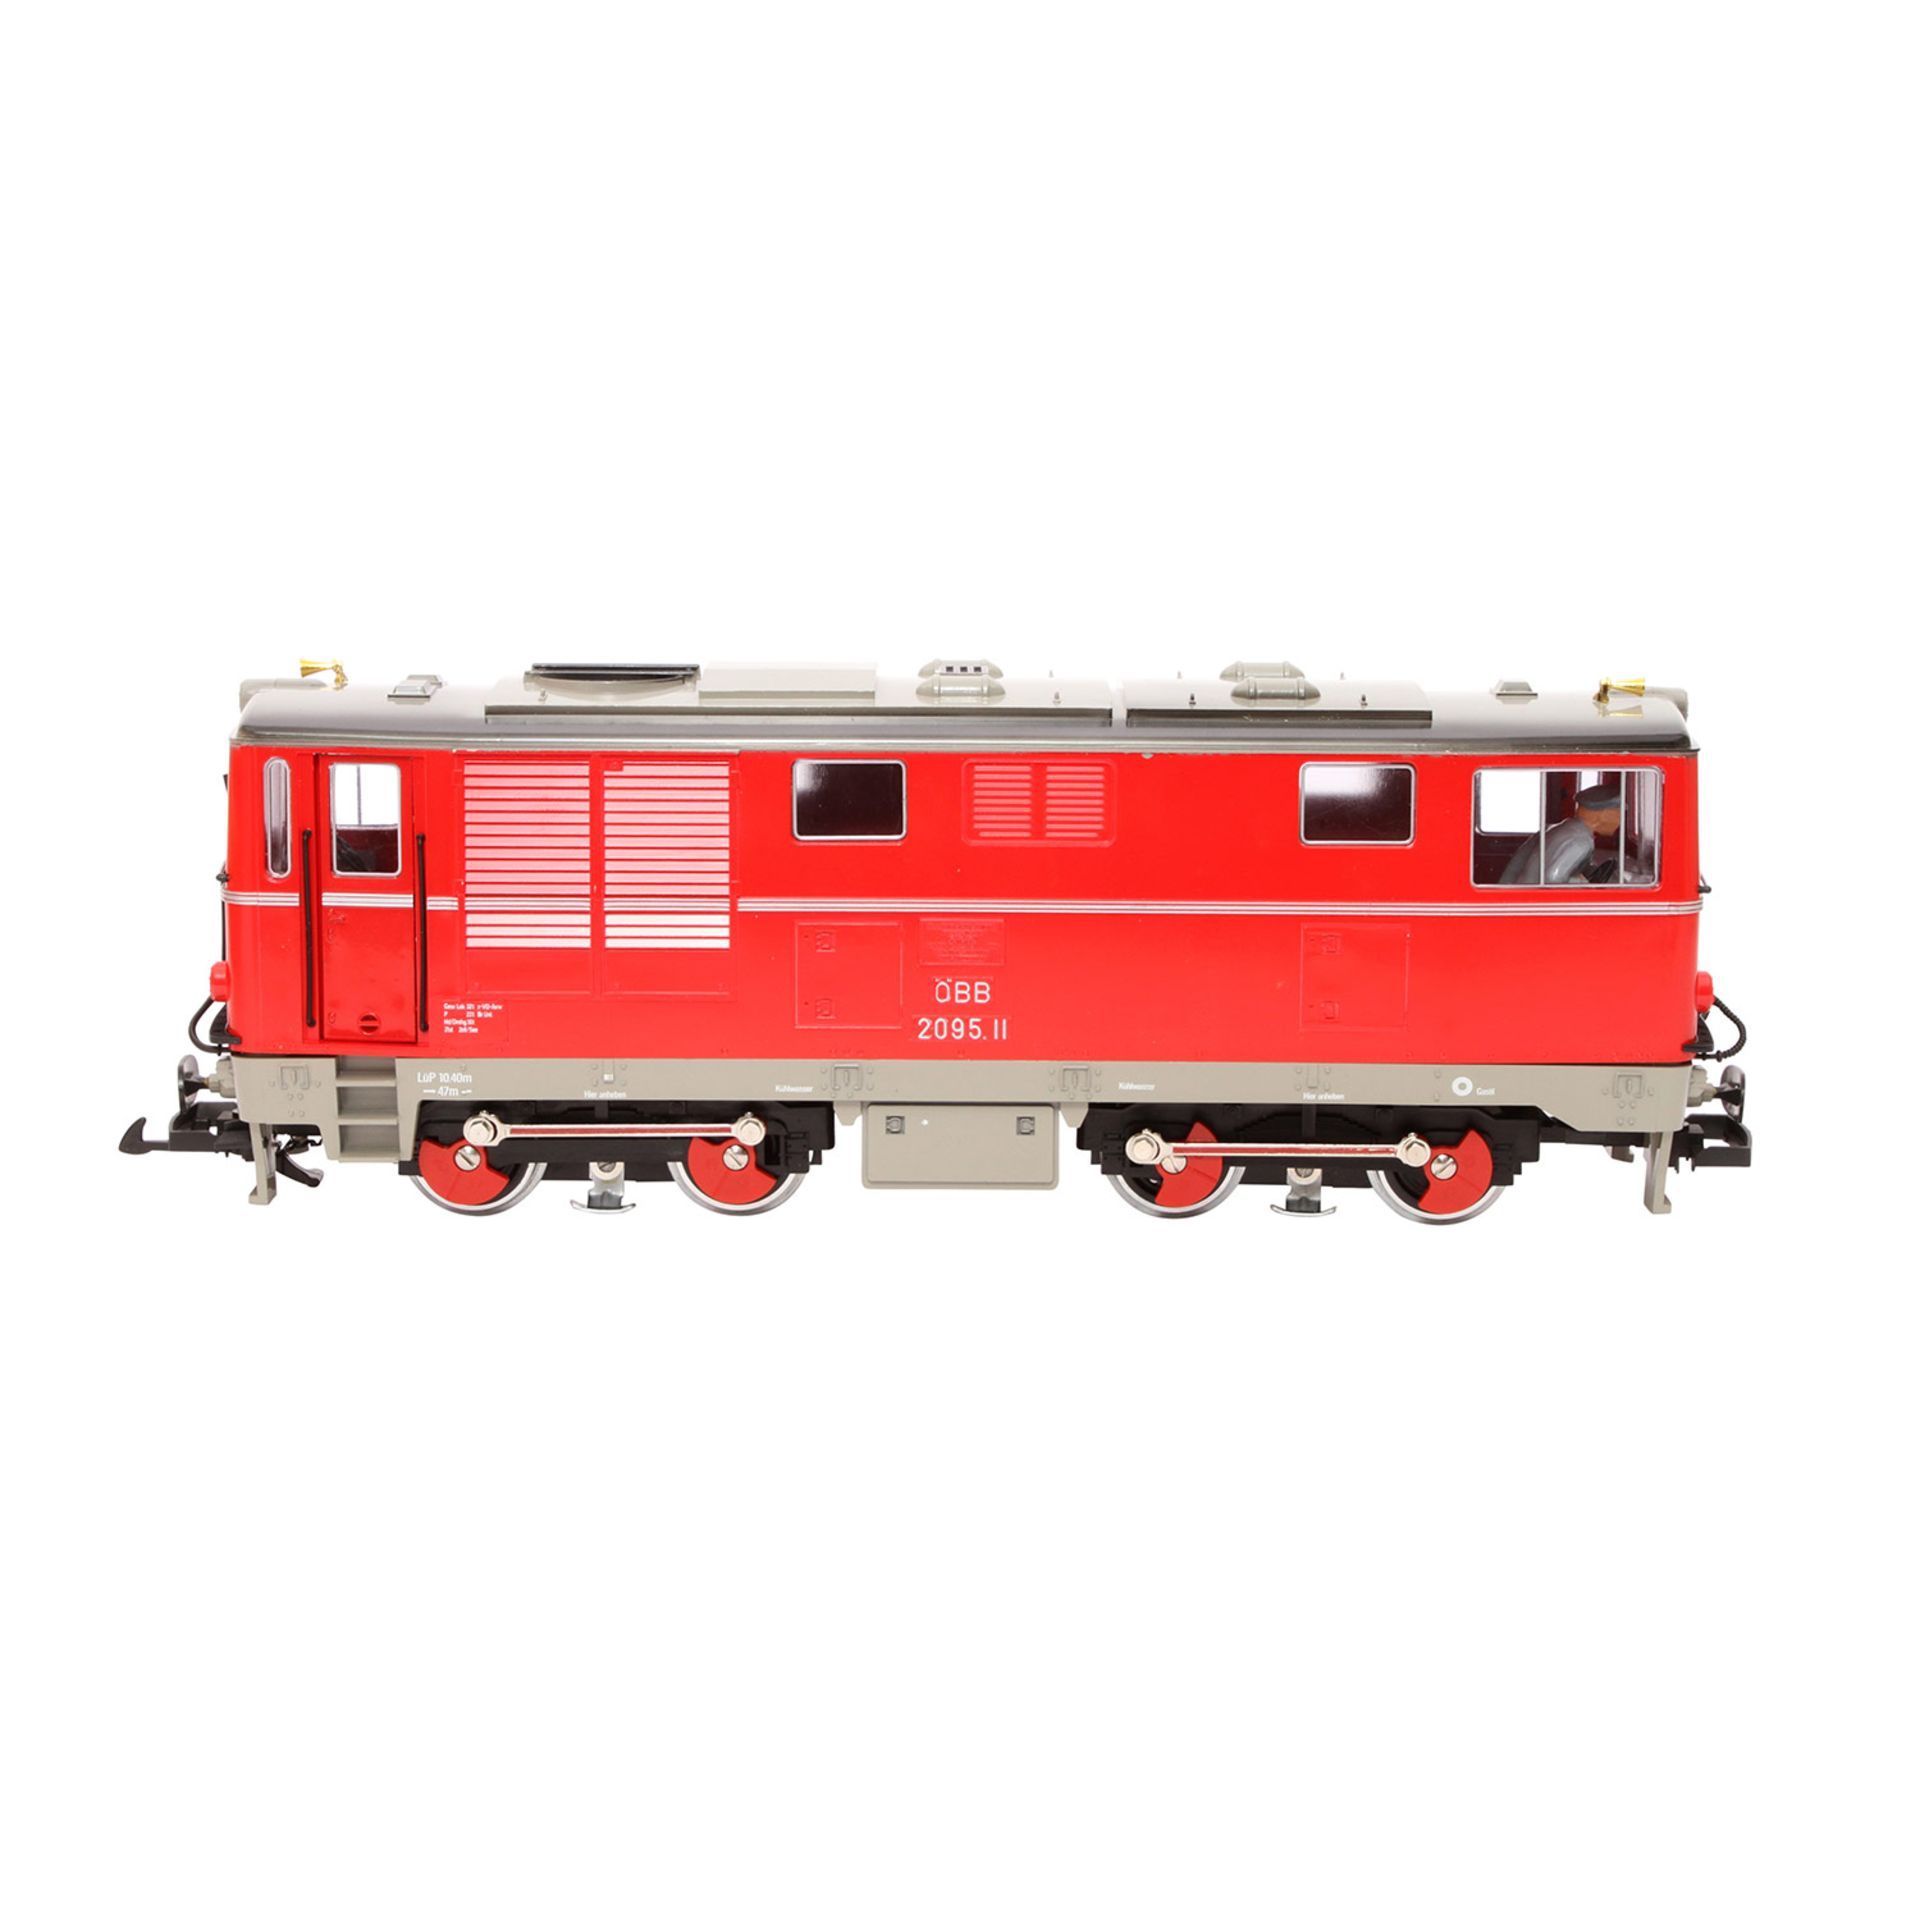 LGB Diesellok 2095, Spur G,rot, BN 2095.11, ÖBB, Stirnbeleuchtung, Türen zum Öffnen, 2 Signalhörner, - Image 4 of 7